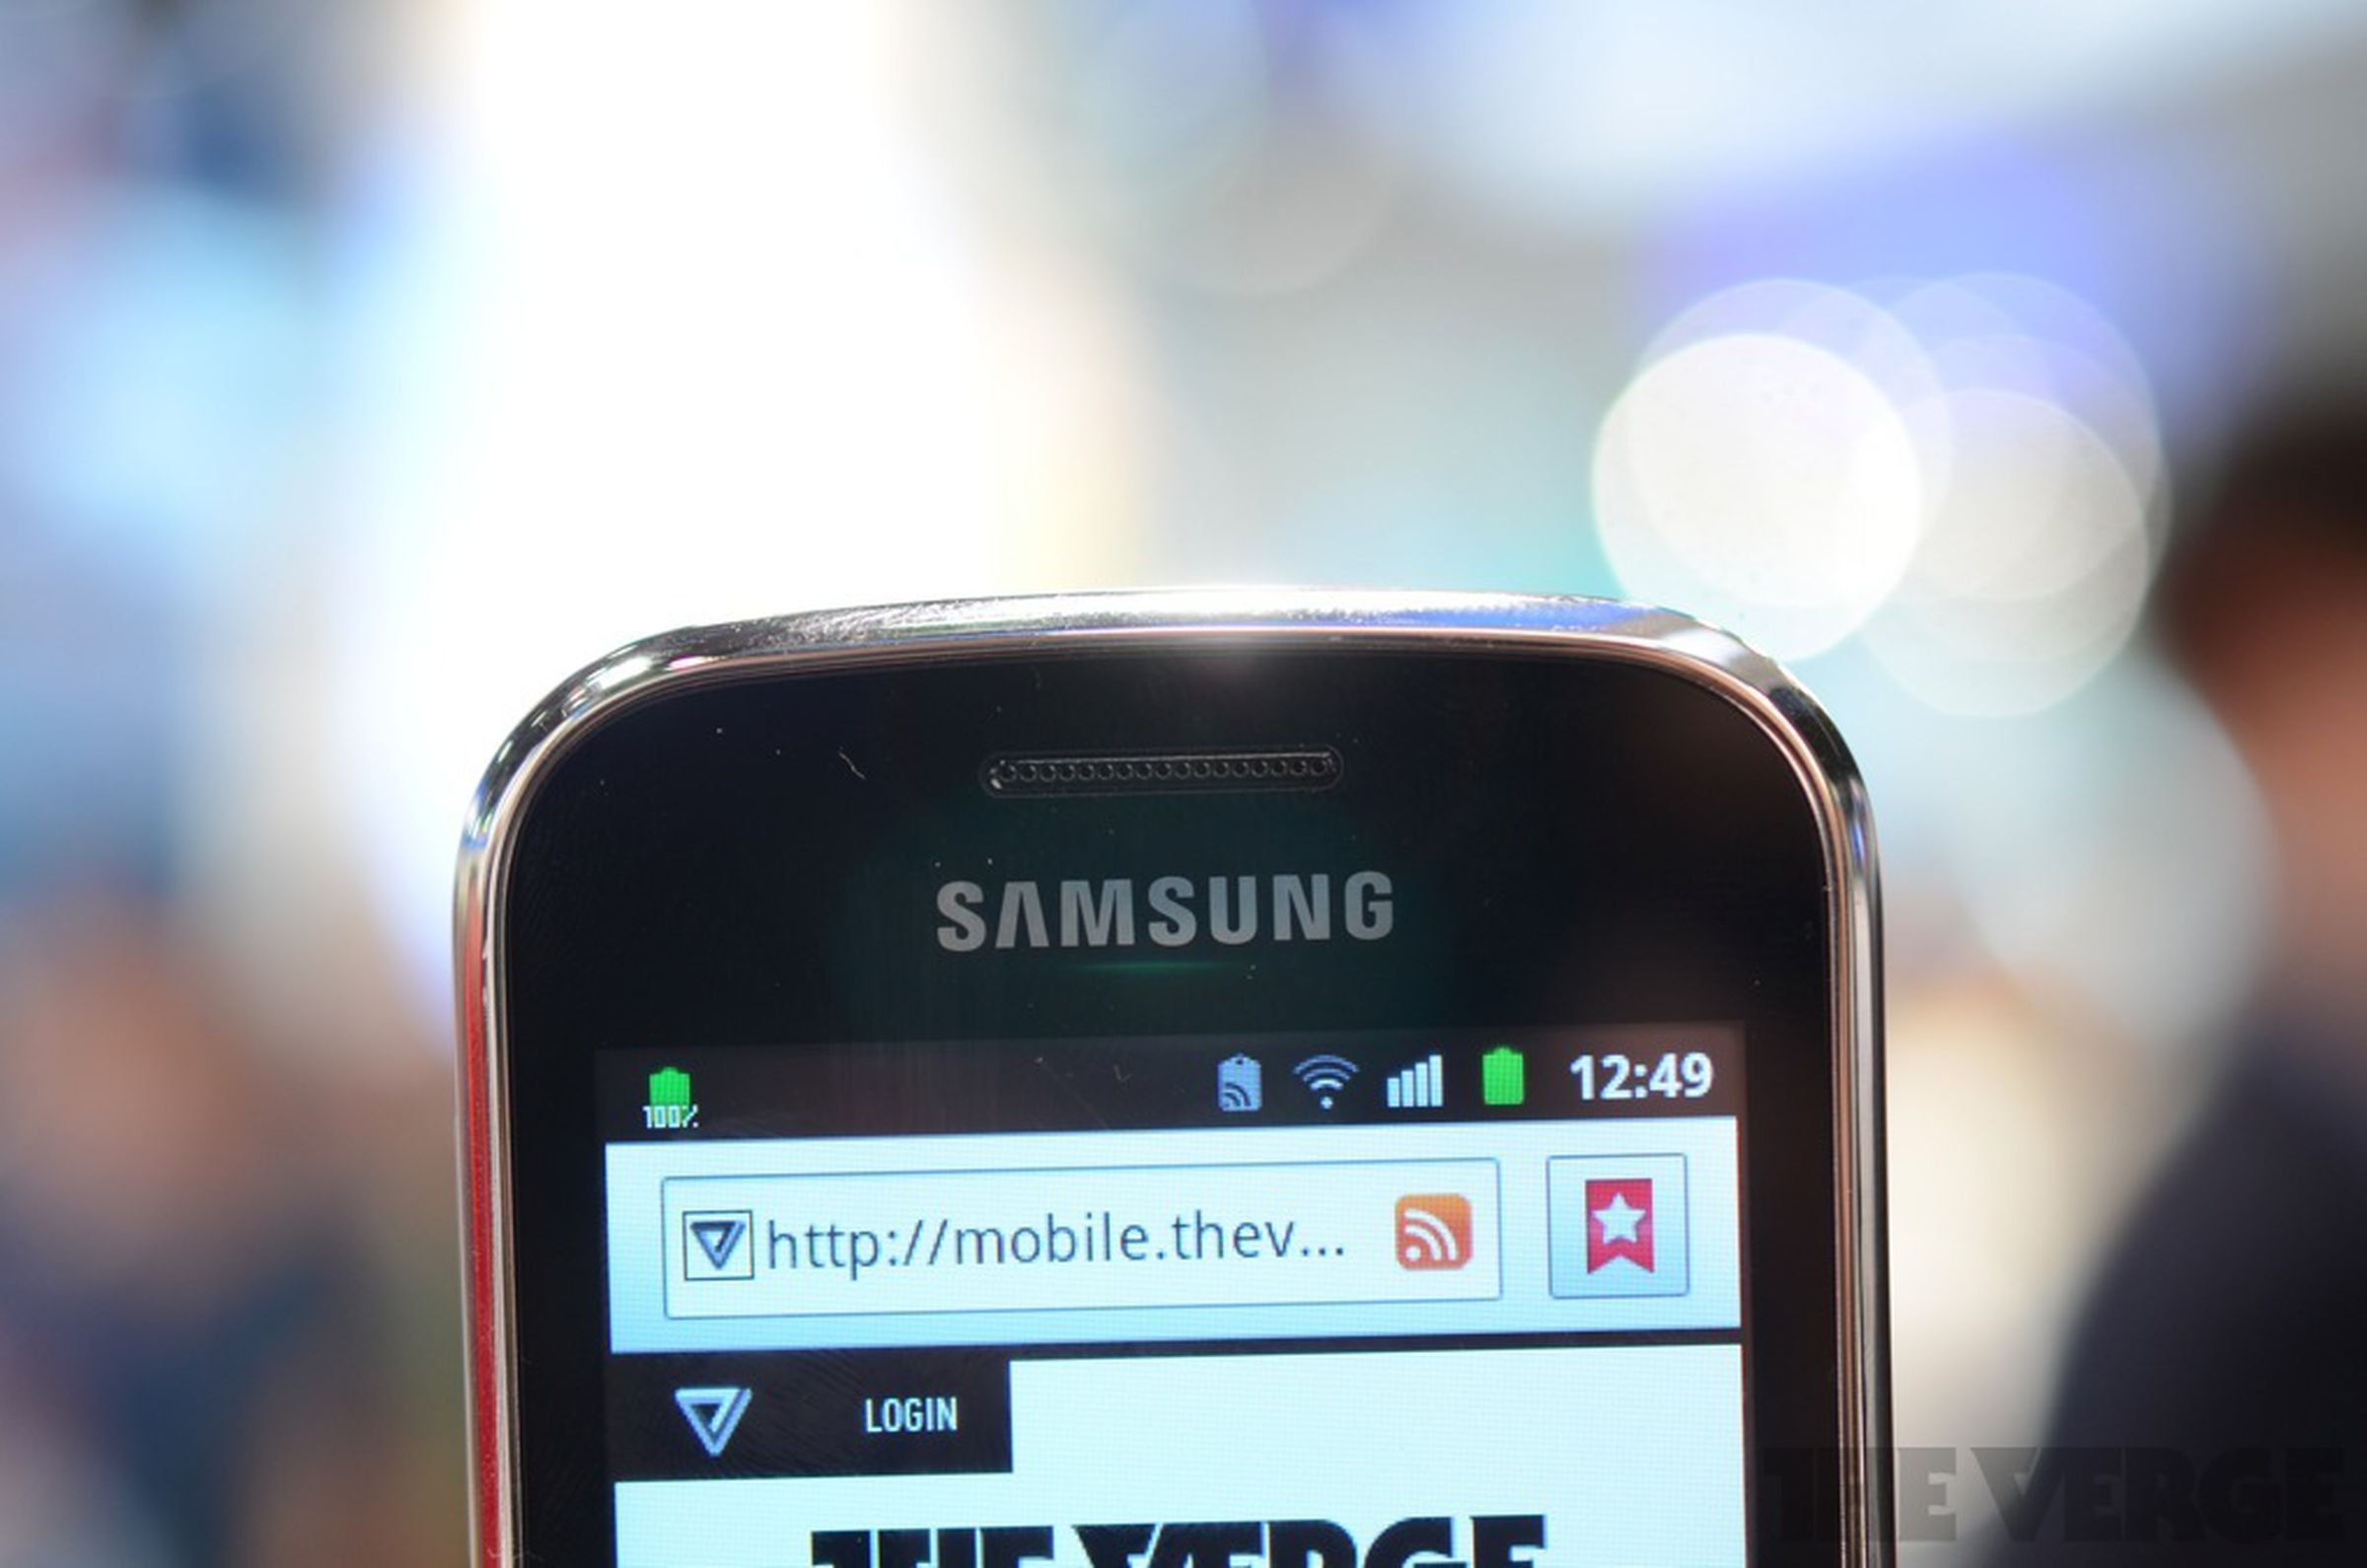 Samsung Galaxy Ace 2, Galaxy Ace Plus, Galaxy Mini 2 hands-on